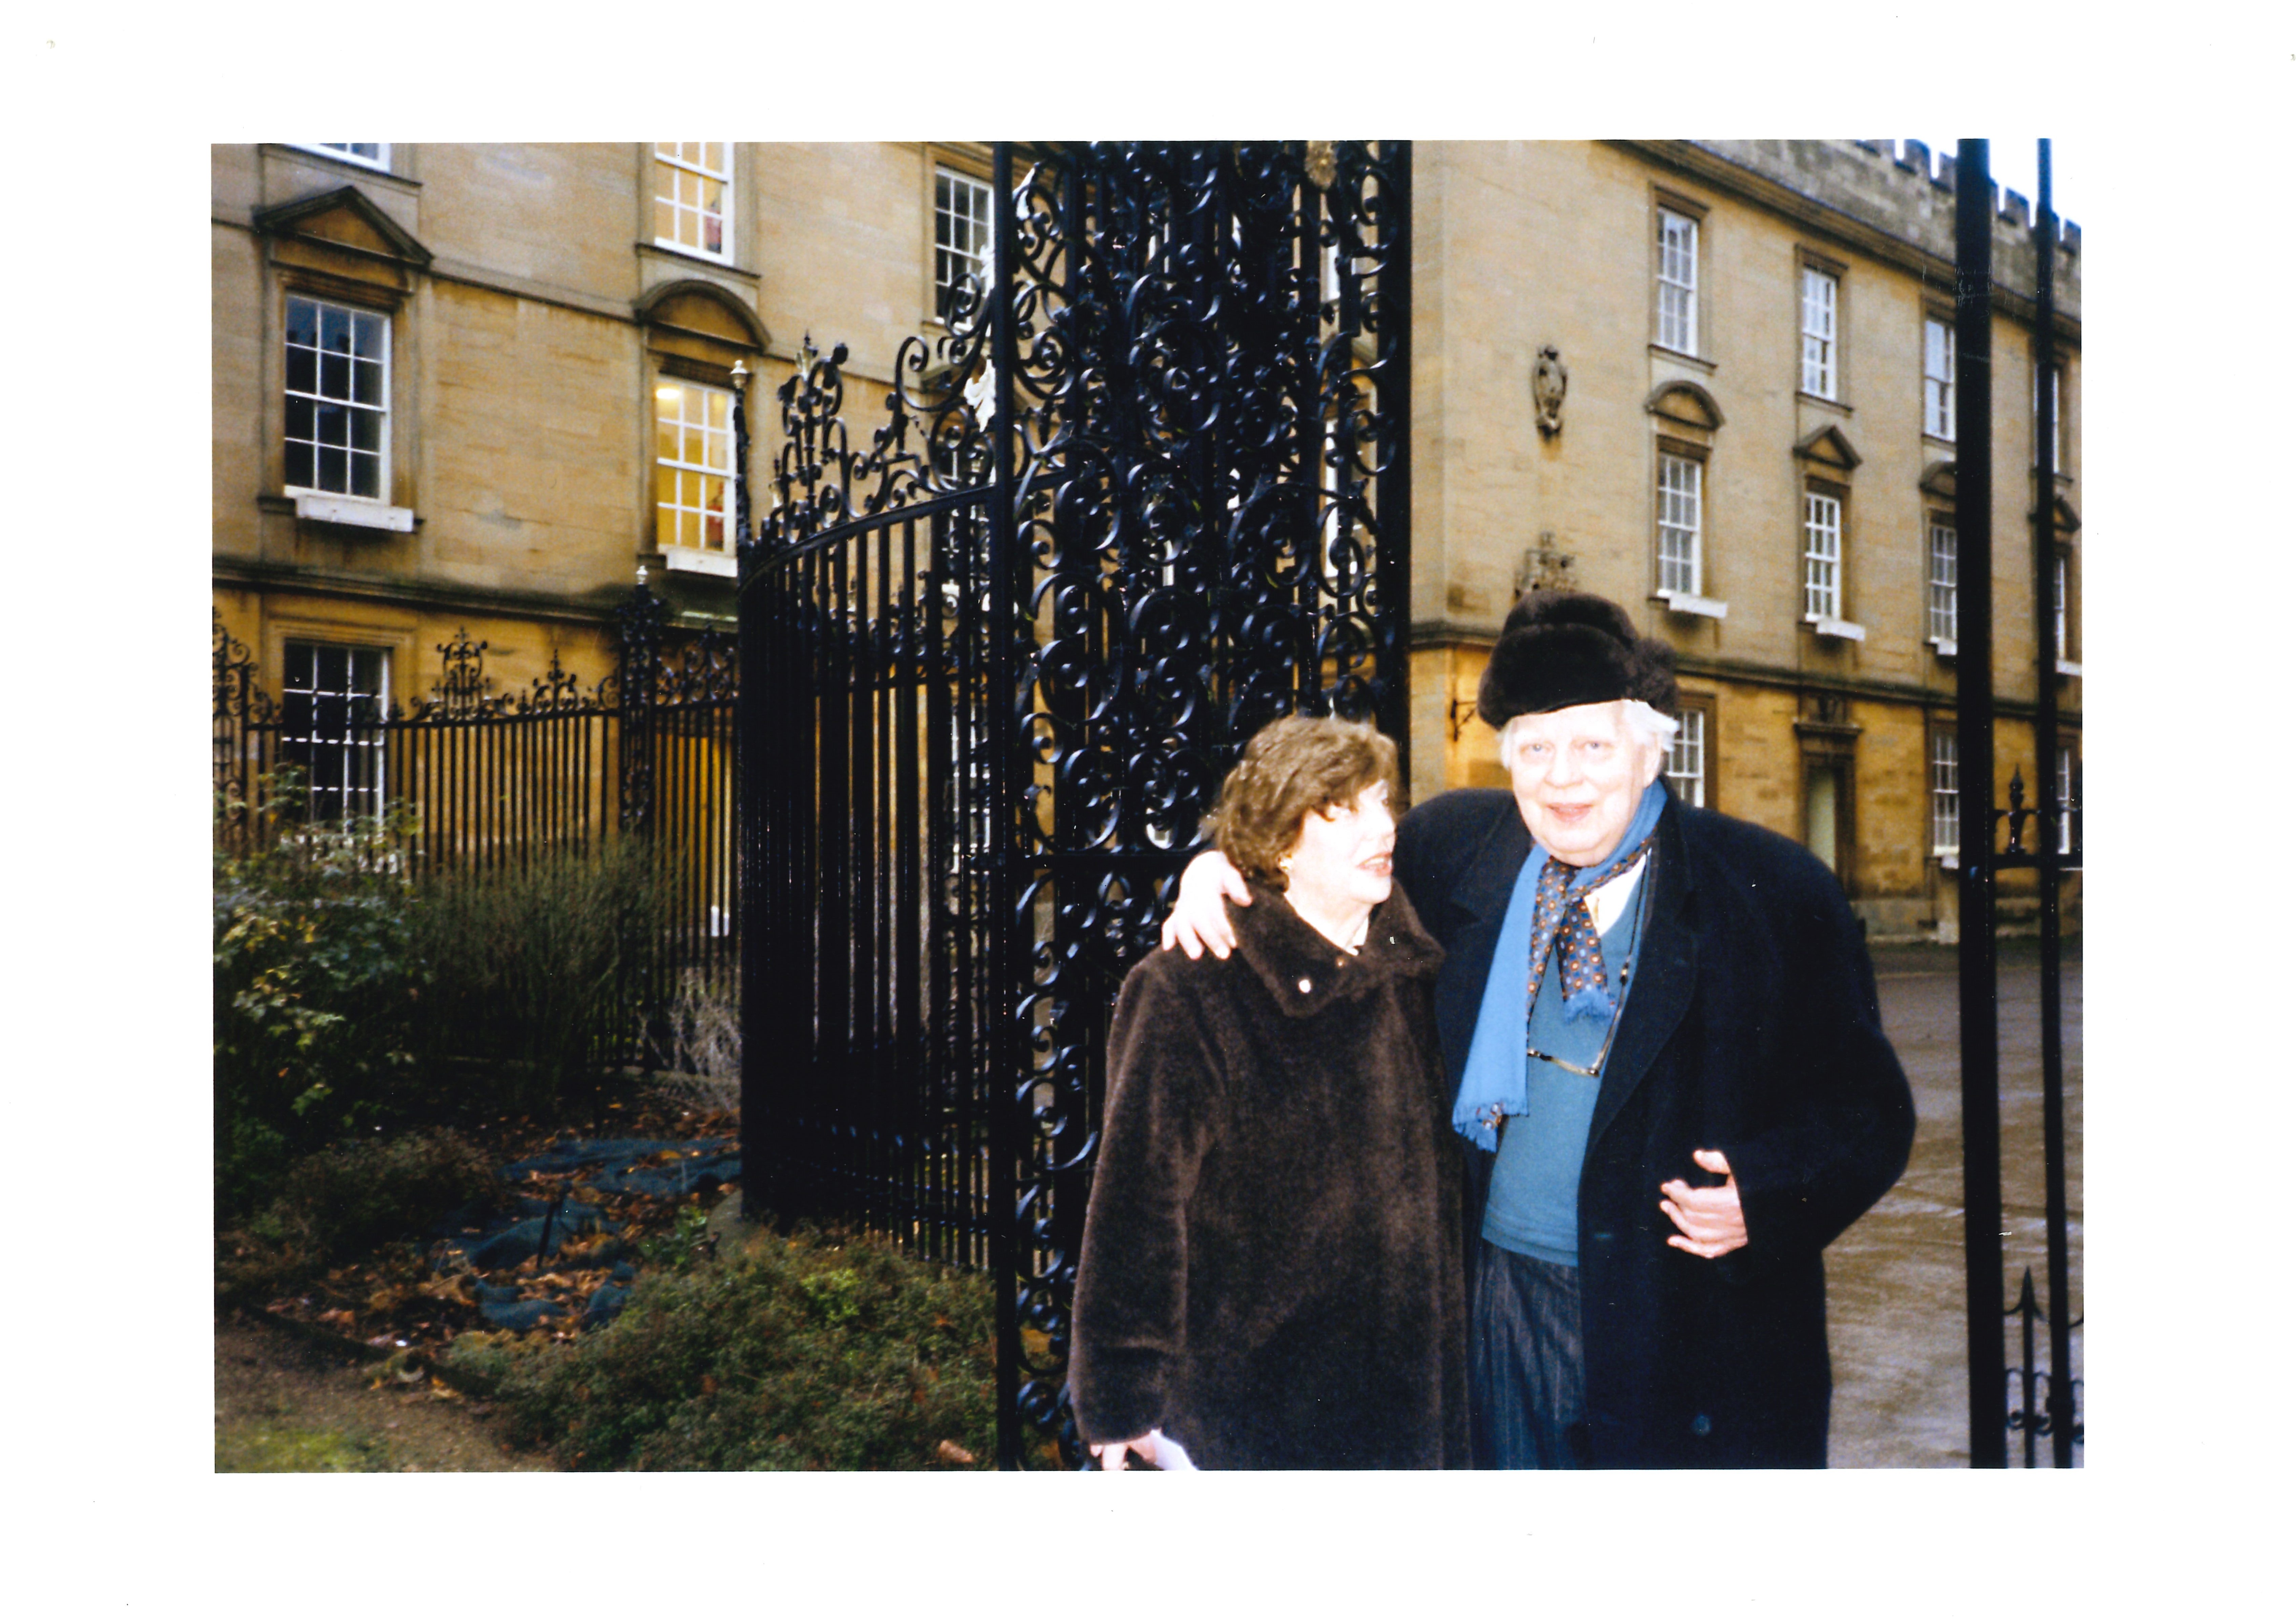 Michael and Ann Dummett in New College Garden Quad